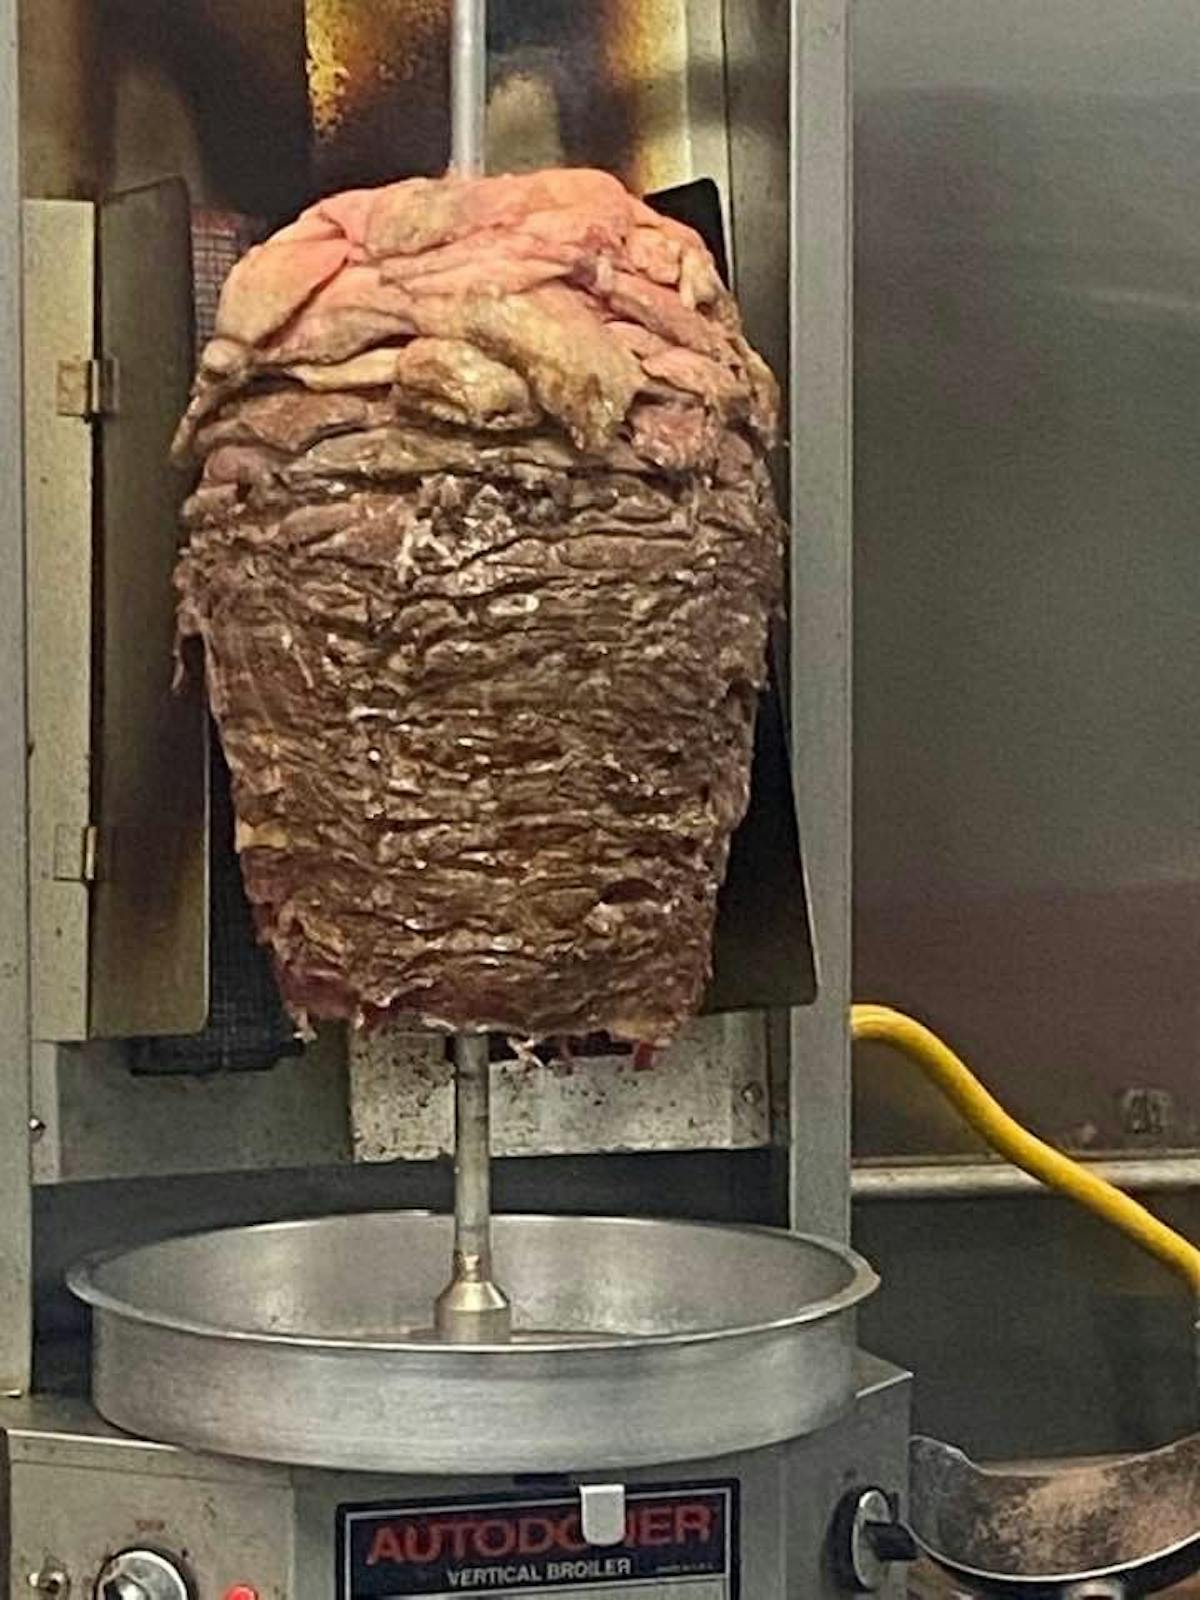 kebab meat